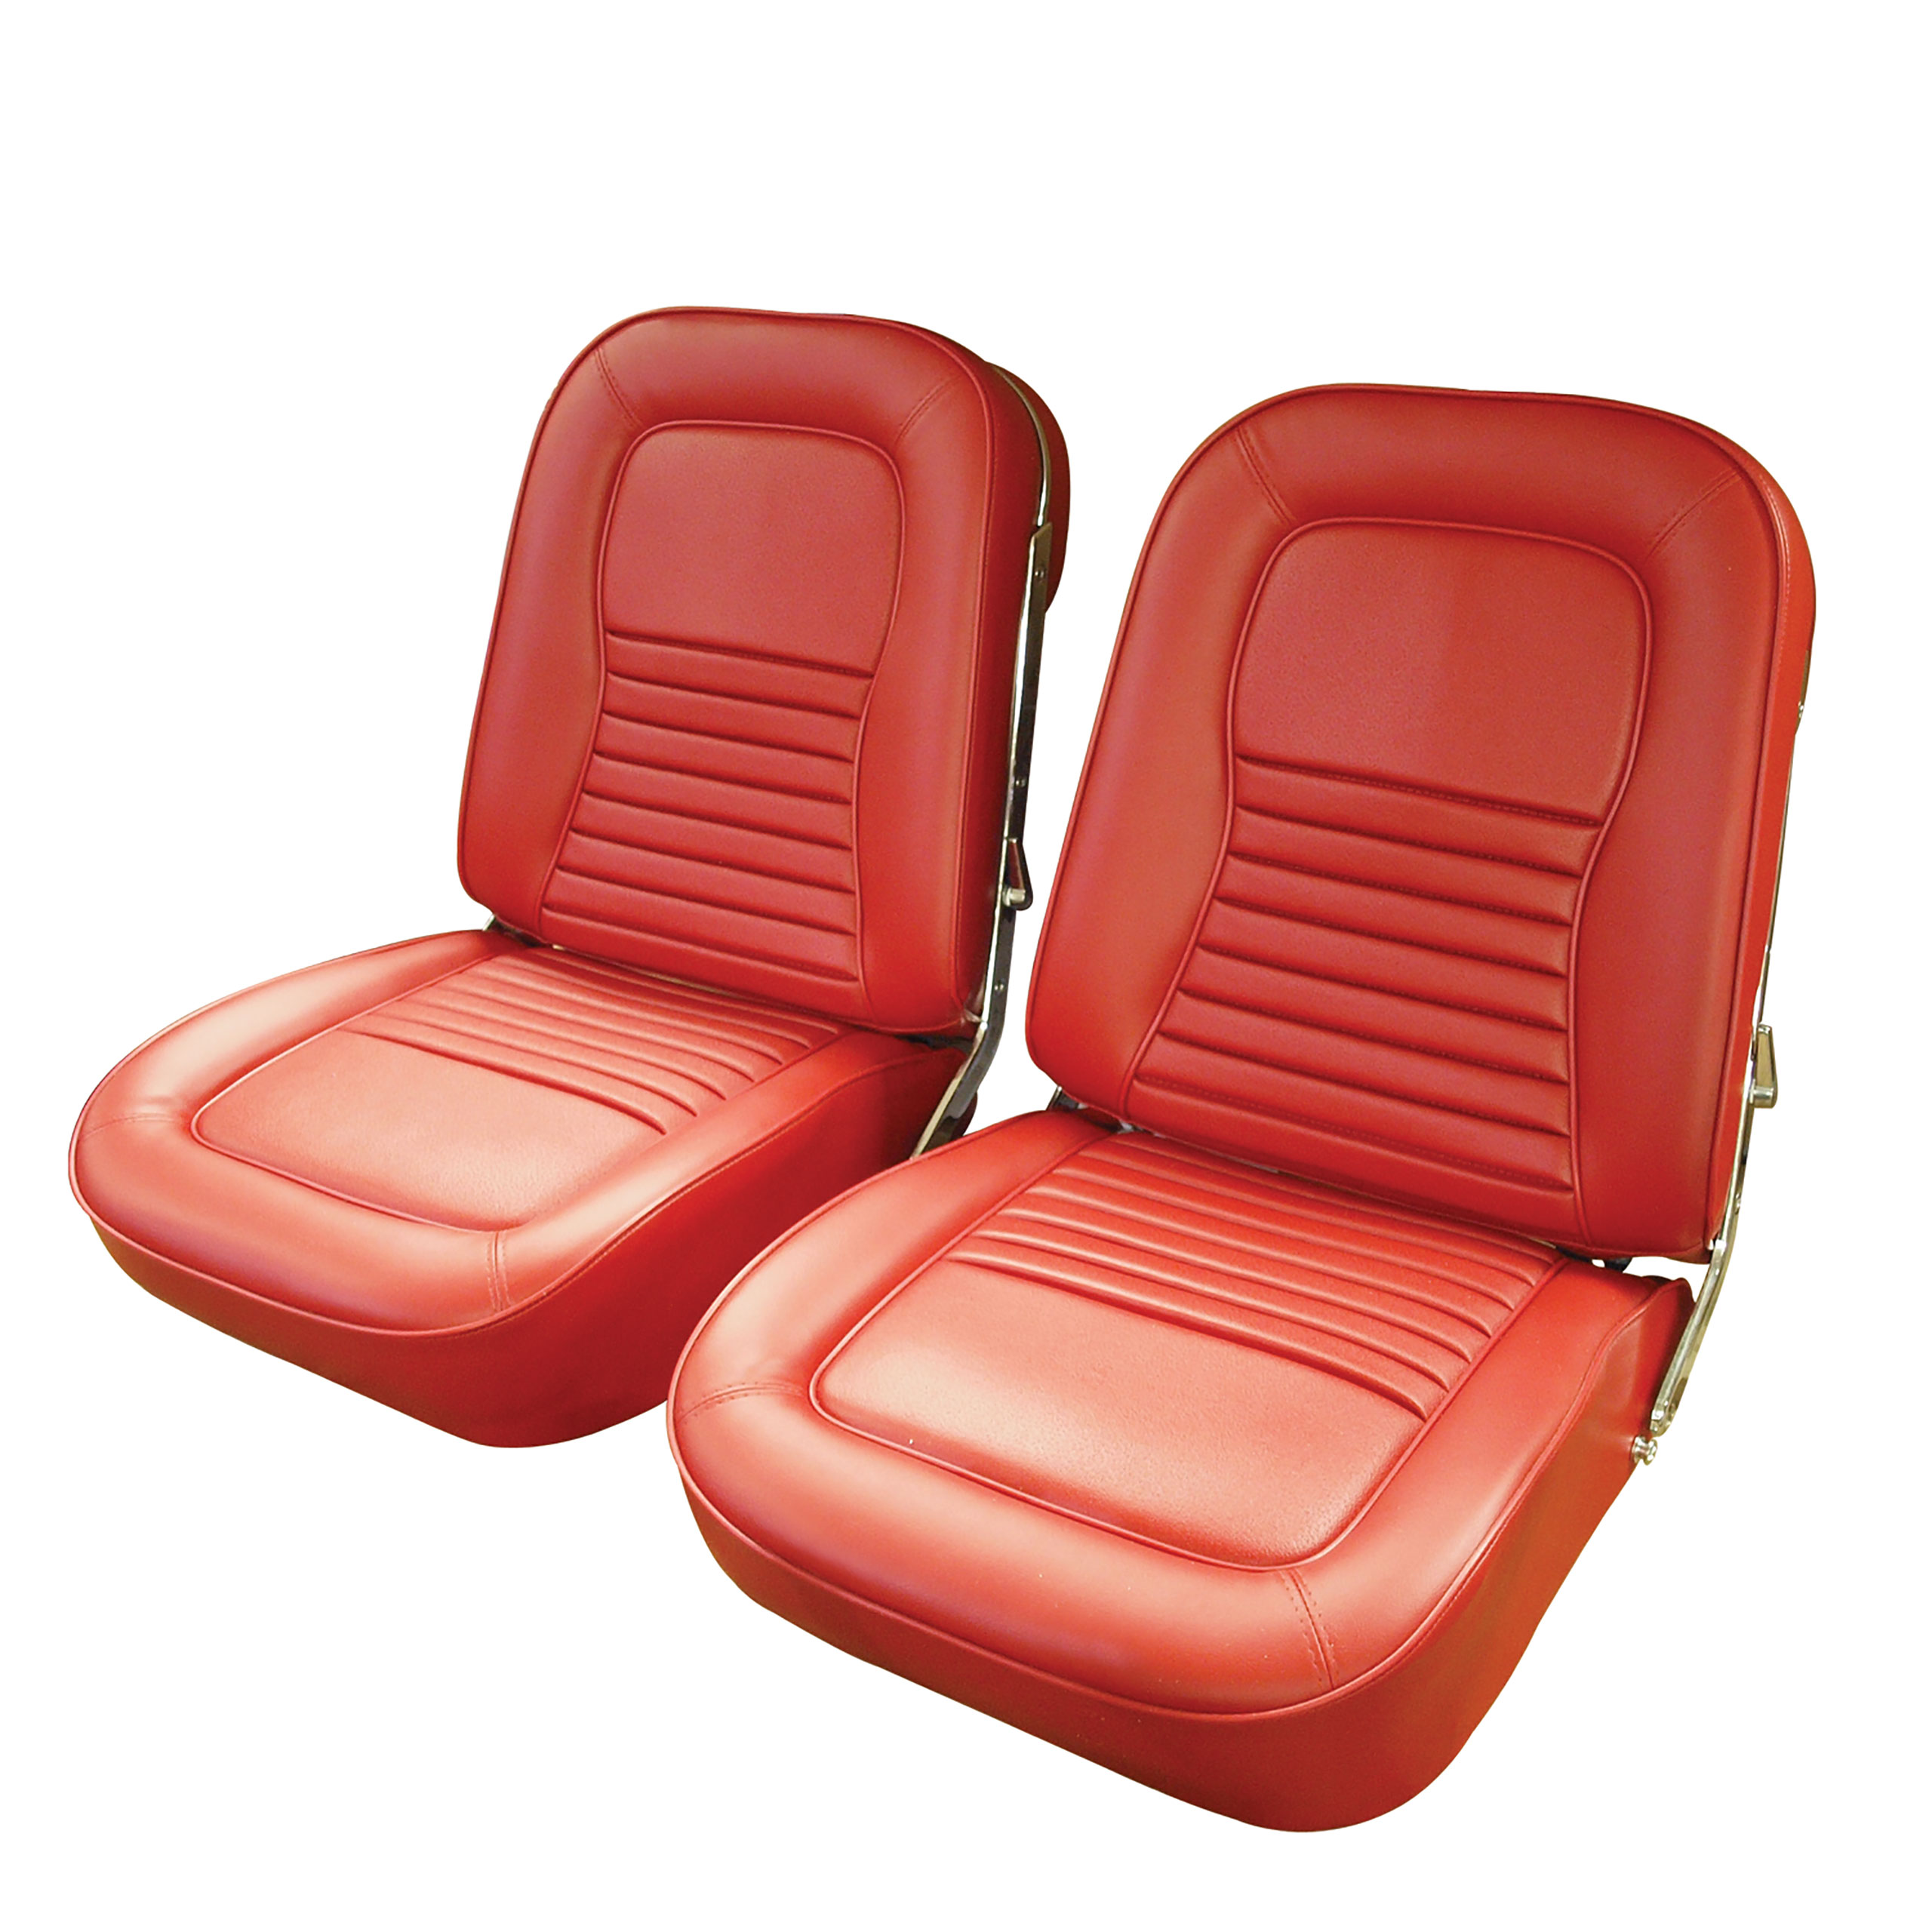 1967 Corvette C2 Vinyl Seat Covers- Red CA-417530 